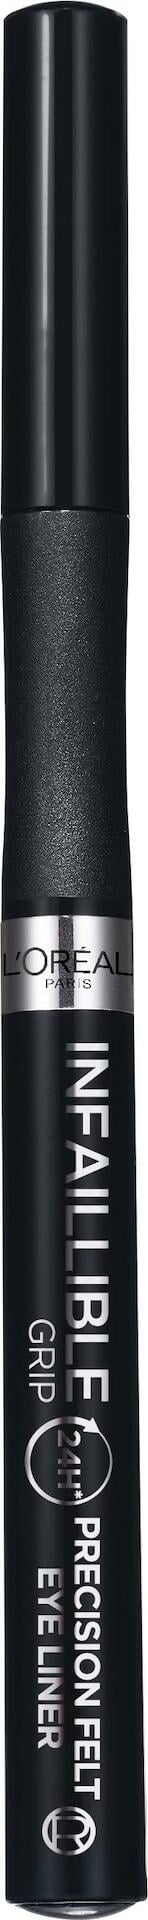 L'Oréal Paris Infaillible Grip 24H Precision Felt Eyeliner 01 Black 1g